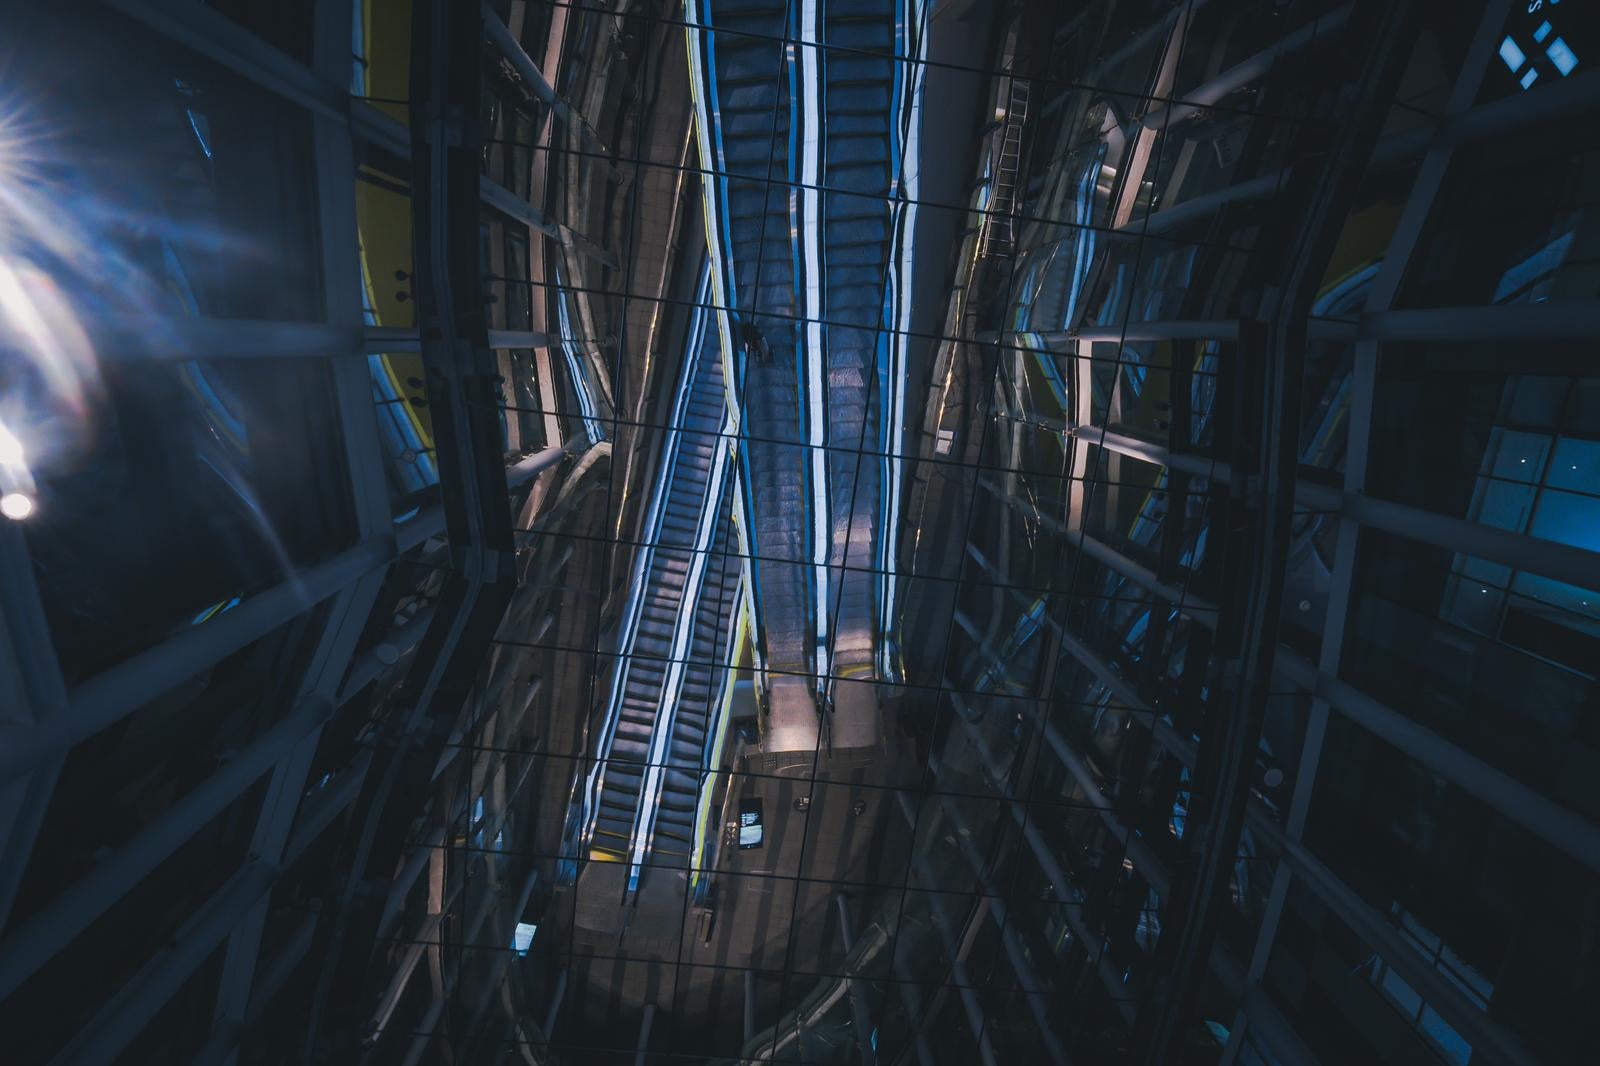 「ガラス天井に映るエスカレーターの反射アート」の写真